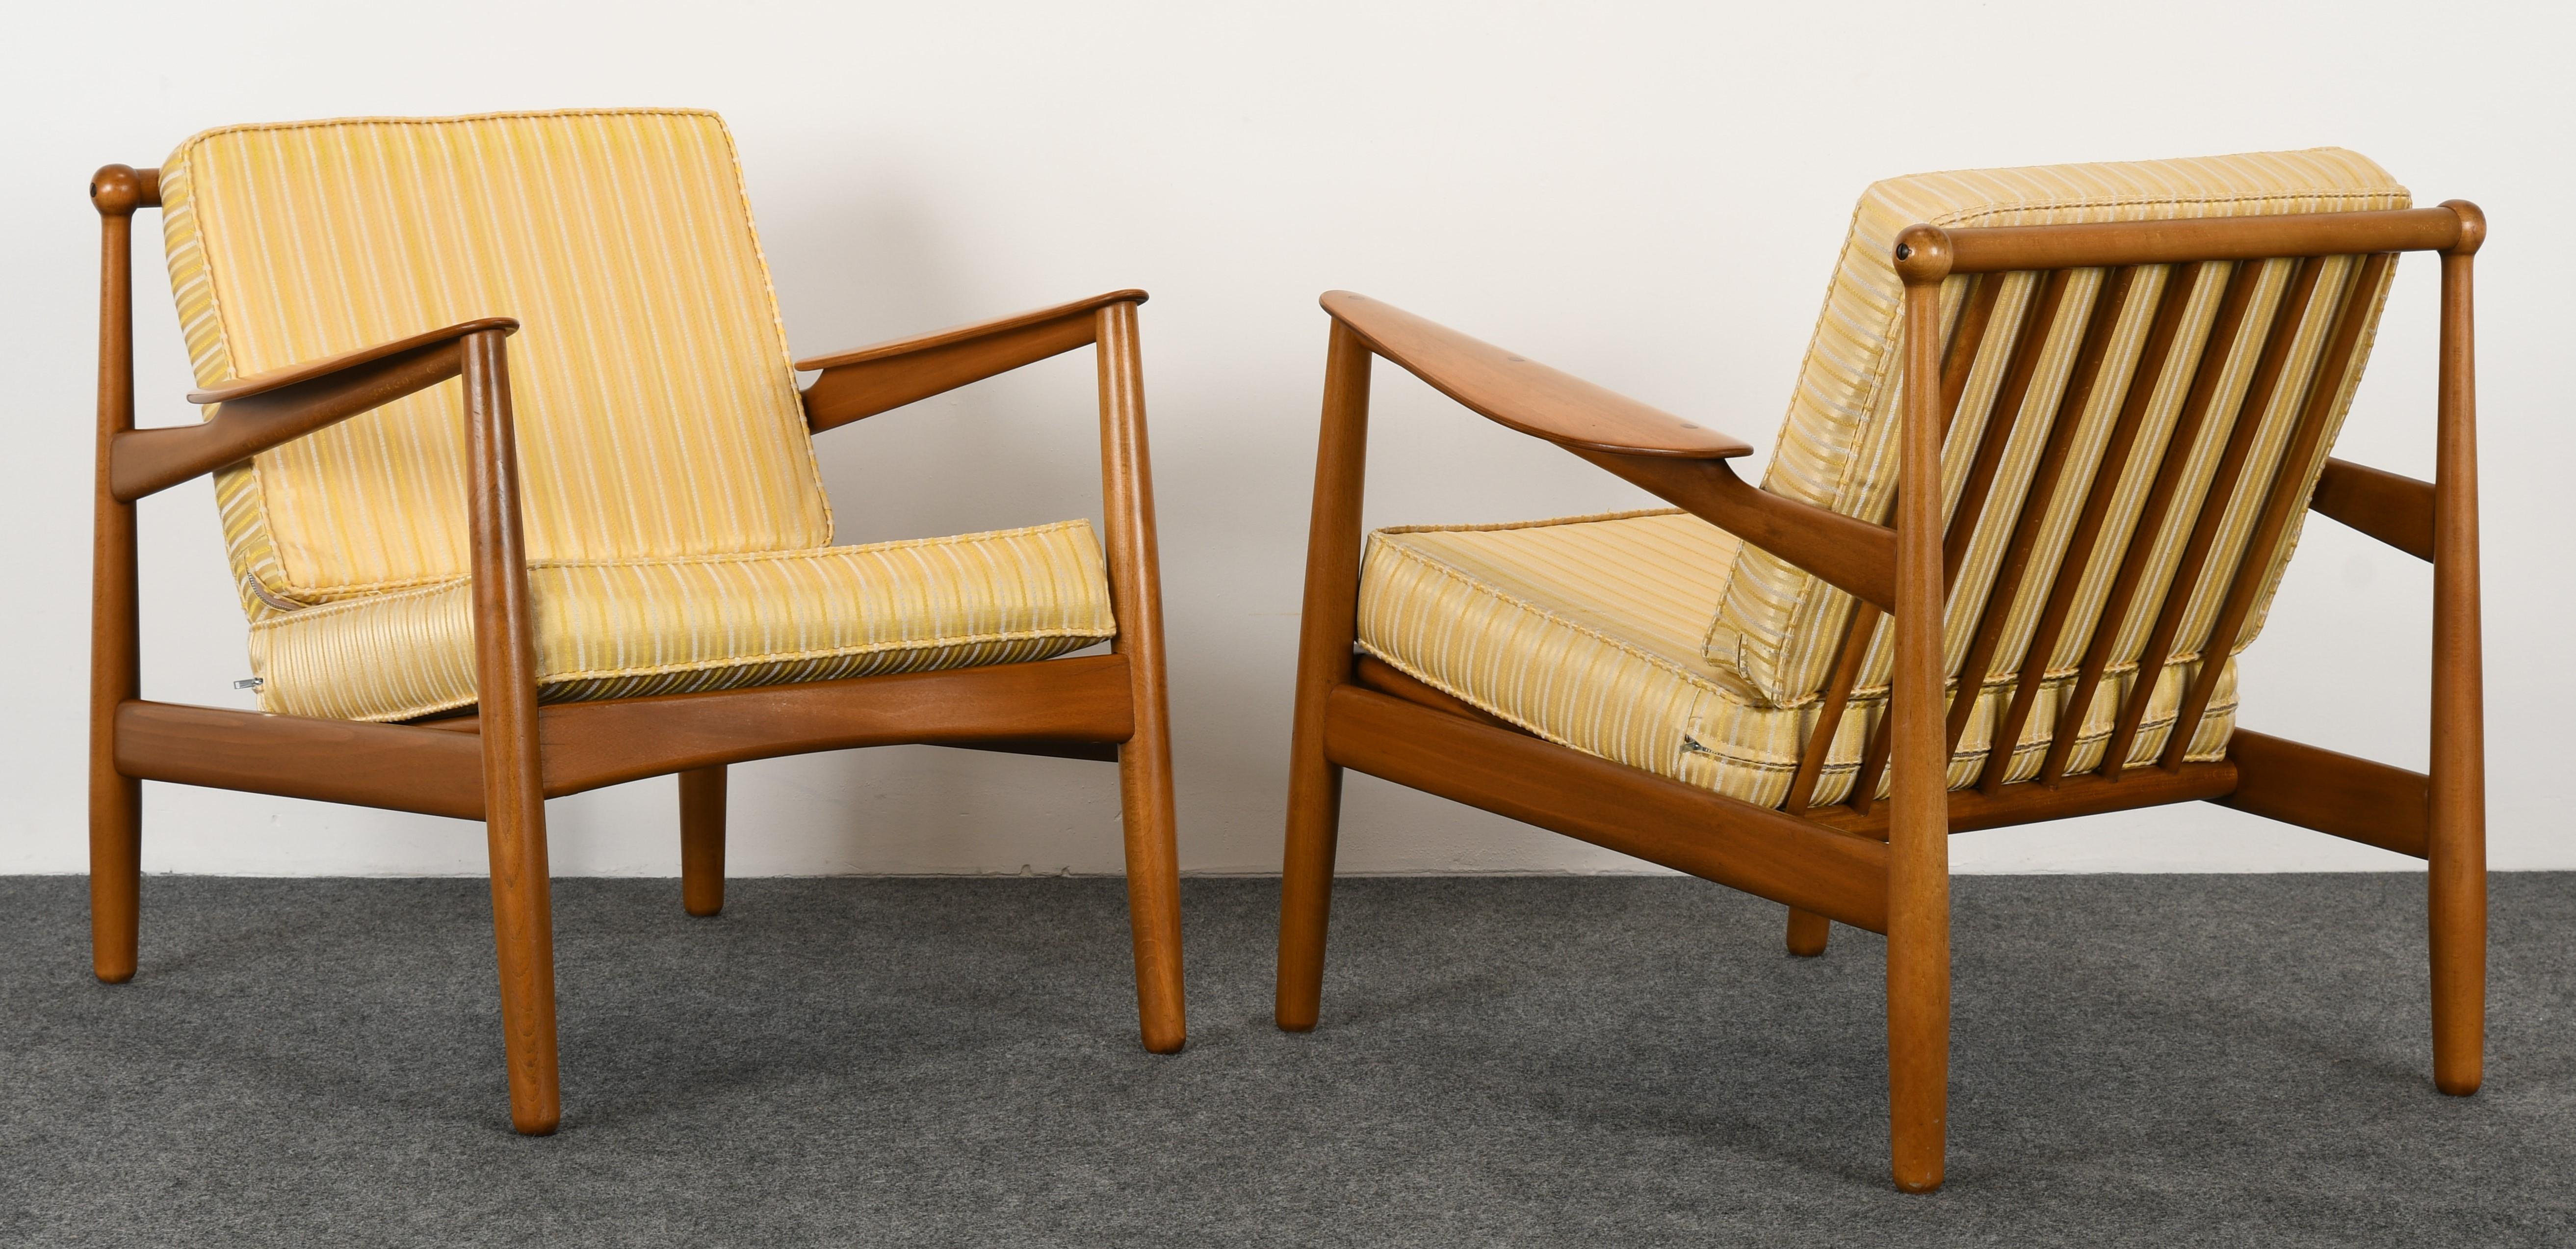 Ein elegantes Paar moderner dänischer Stühle von P. Jeppesen. Dieses Modell ist fast identisch mit dem Easy Chair Modell 401 von Arne Hovmand-Olsen:: obwohl es leichte Unterschiede im Design gibt:: wurden beide Stühle von derselben Firma